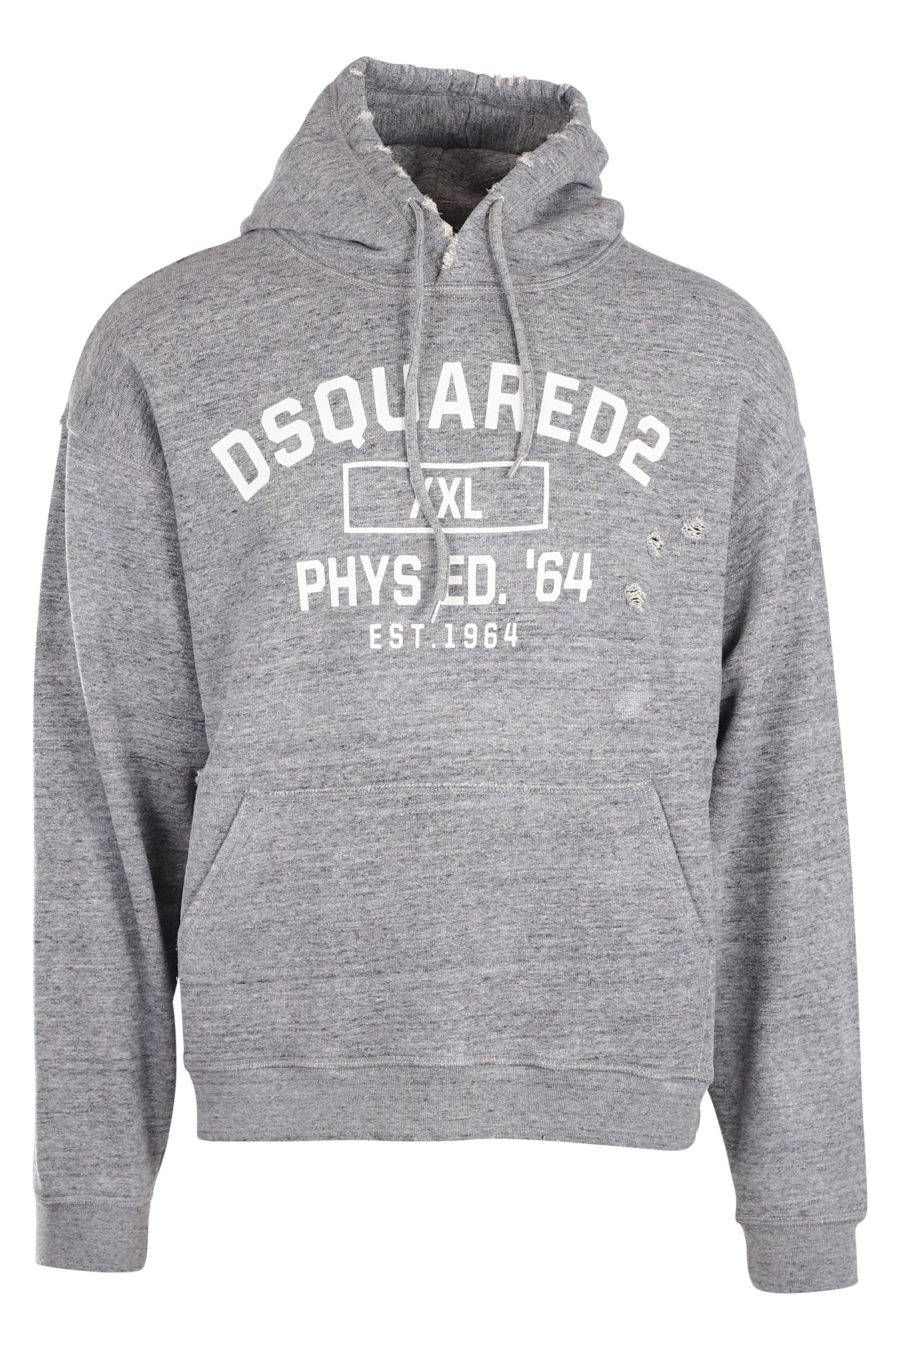 Grey hooded sweatshirt with white "phys ed 64" logo - IMG 9953